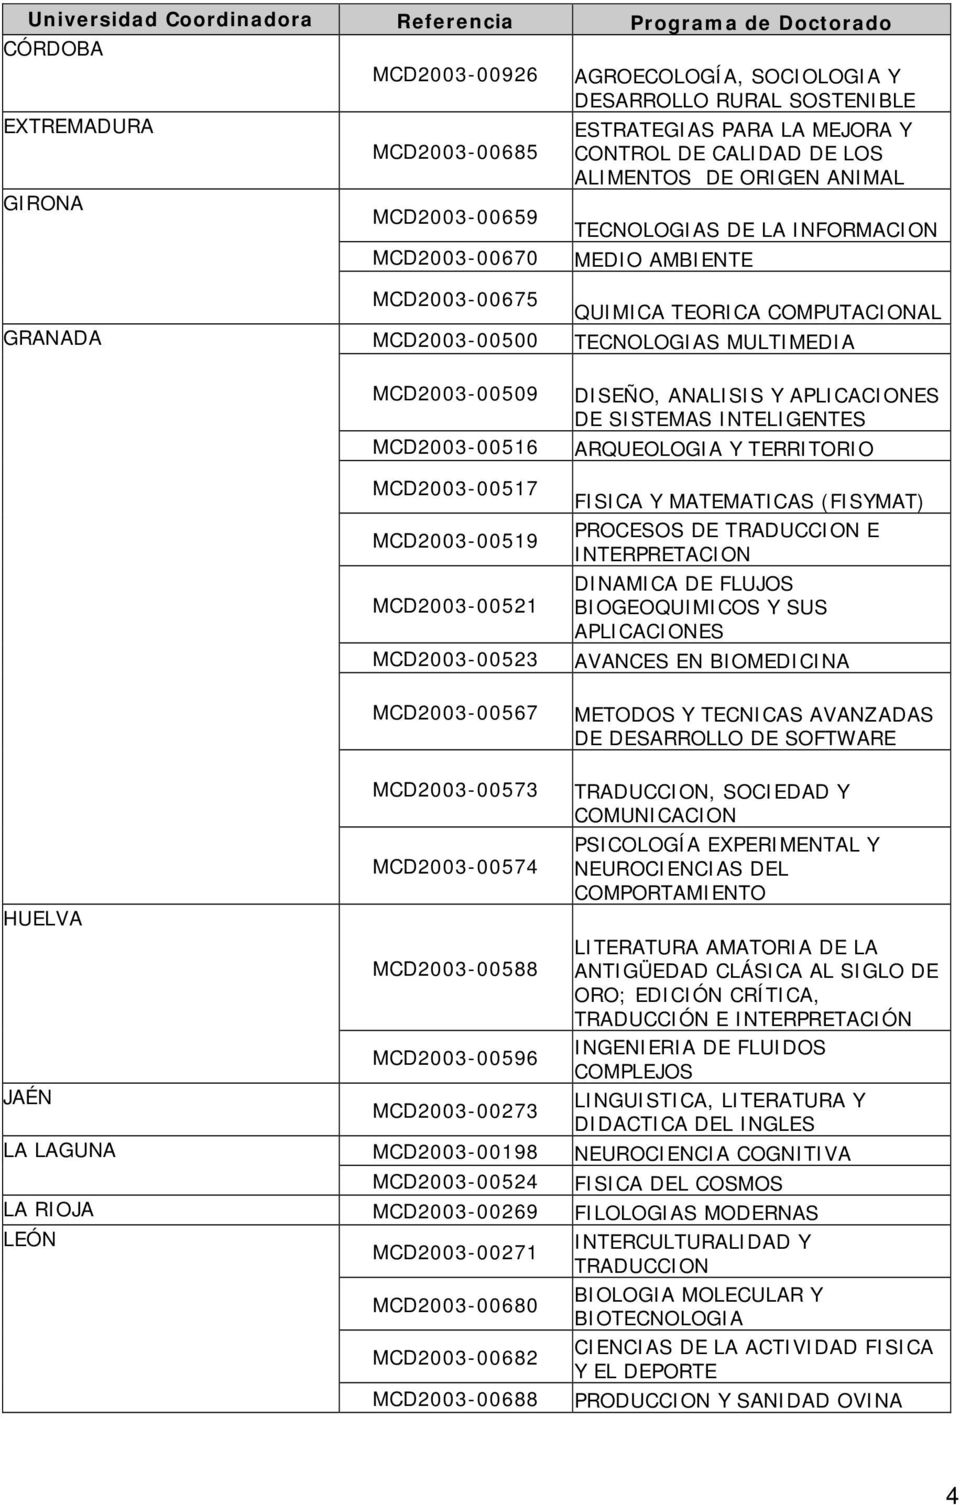 MCD2003-00567 QUIMICA TEORICA COMPUTACIONAL TECNOLOGIAS MULTIMEDIA DISEÑO, ANALISIS Y APLICACIONES DE SISTEMAS INTELIGENTES ARQUEOLOGIA Y TERRITORIO FISICA Y MATEMATICAS (FISYMAT) PROCESOS DE